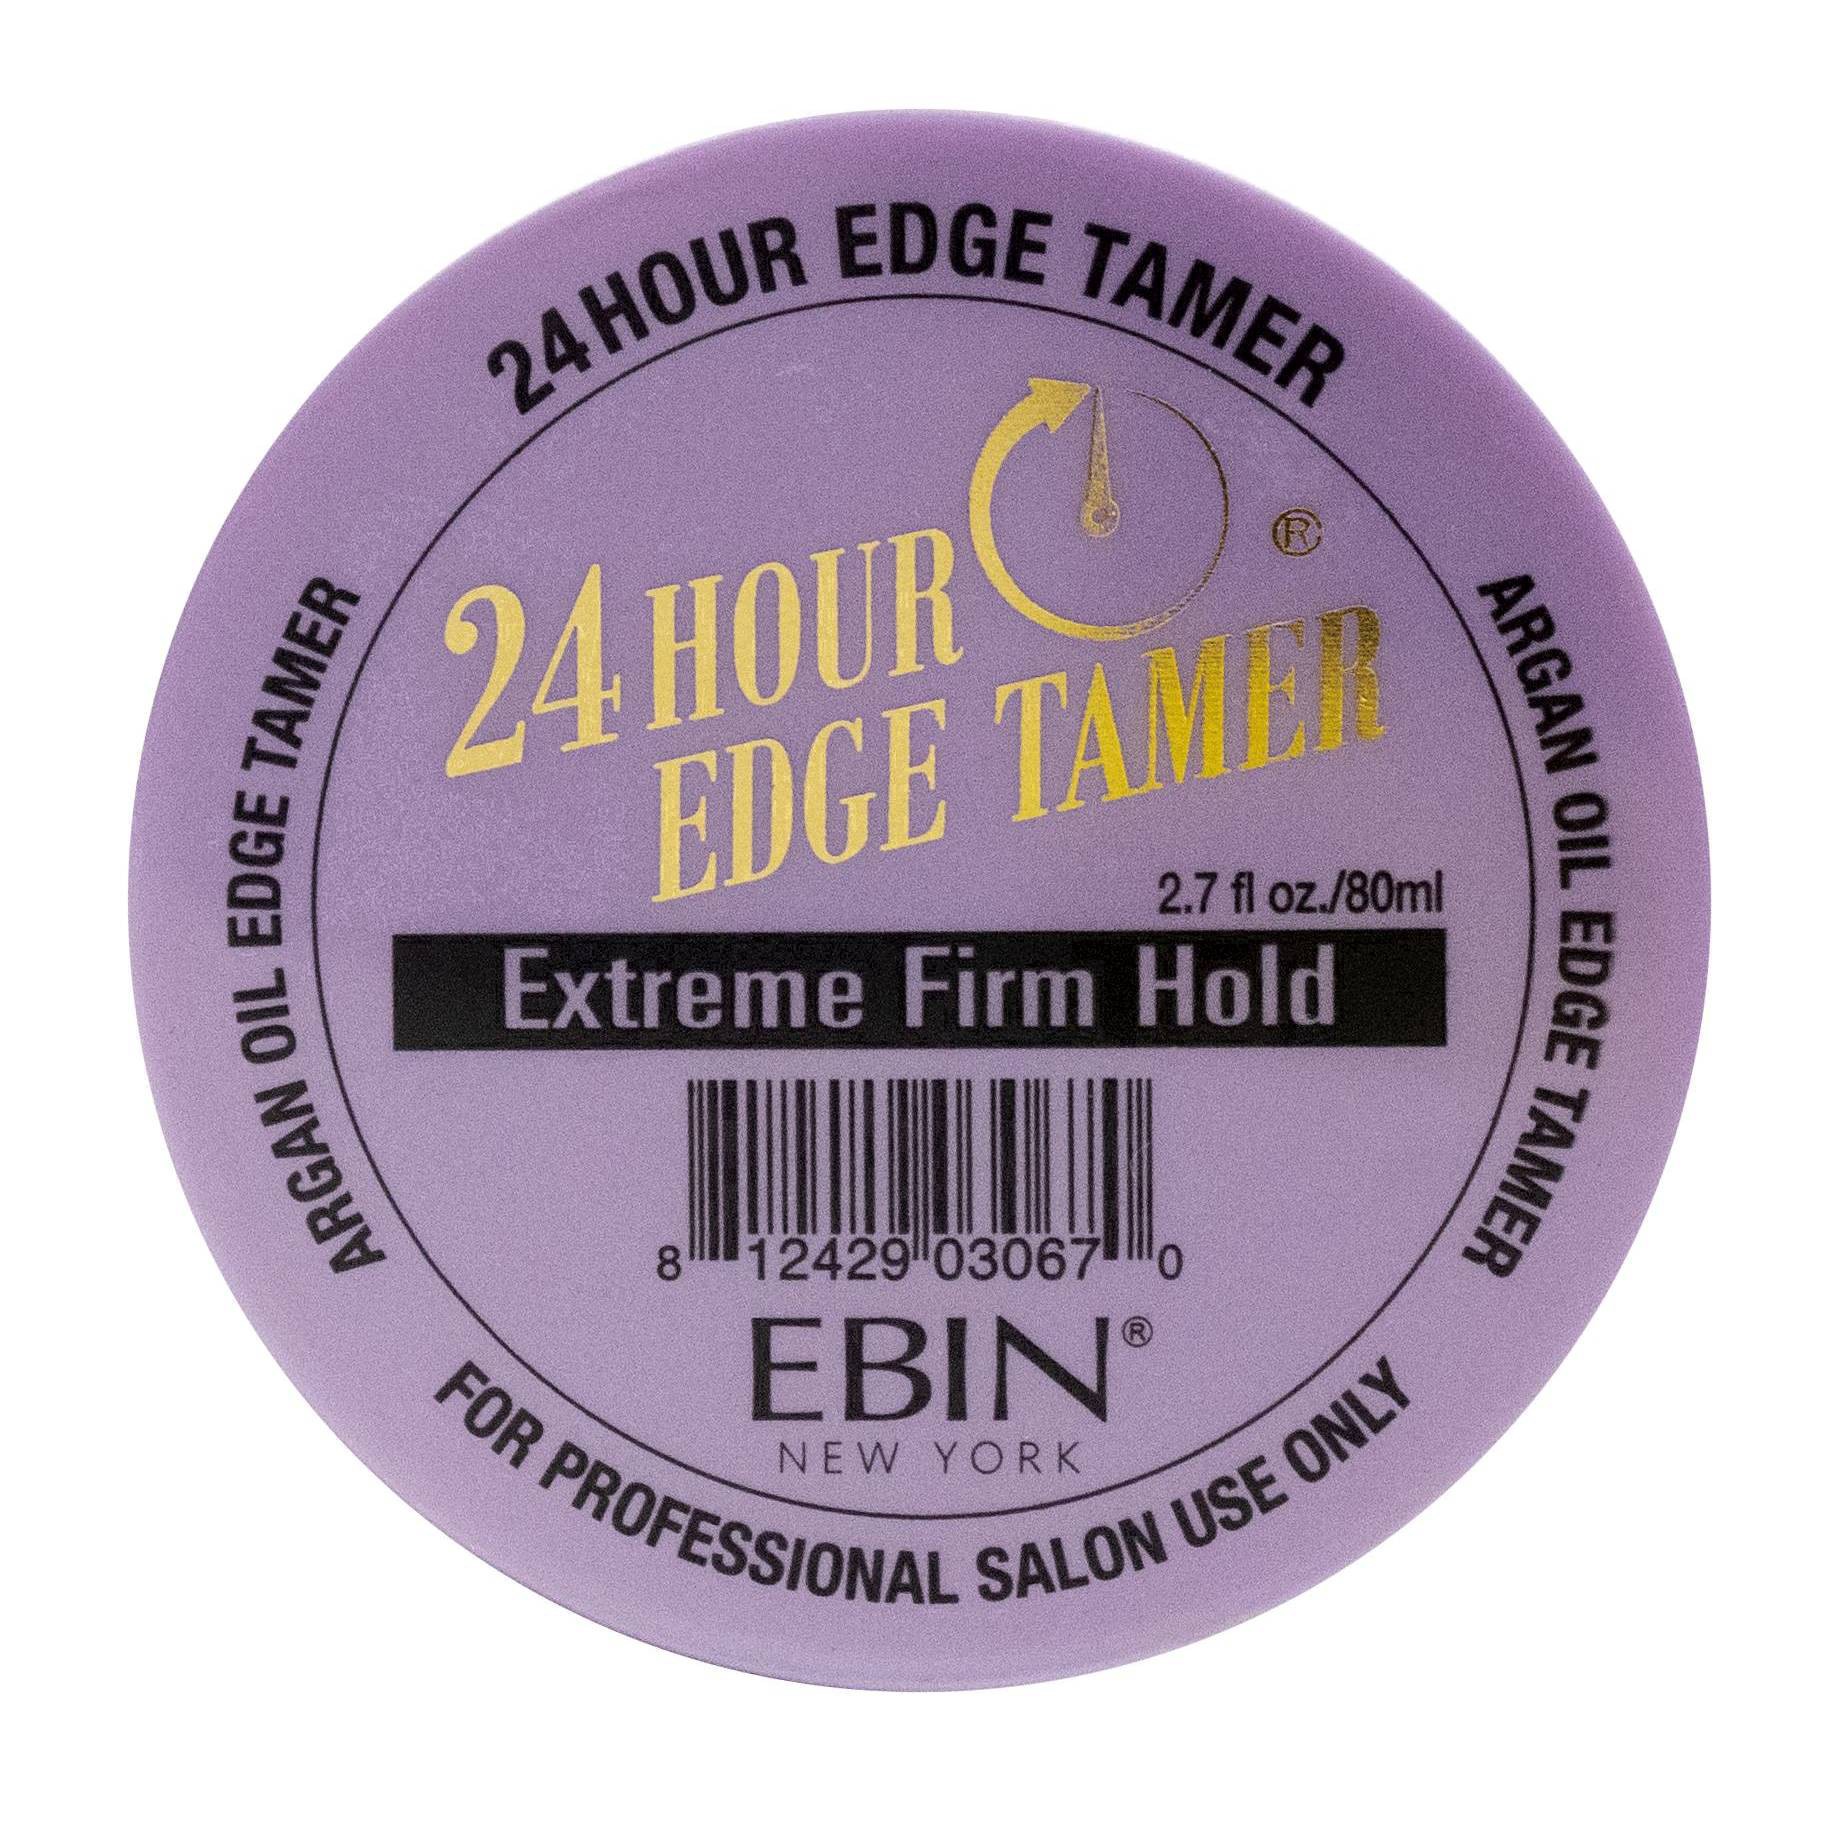 slide 44 of 53, EBIN Edge Tamer Extreme Firm Hold, 2.7 oz